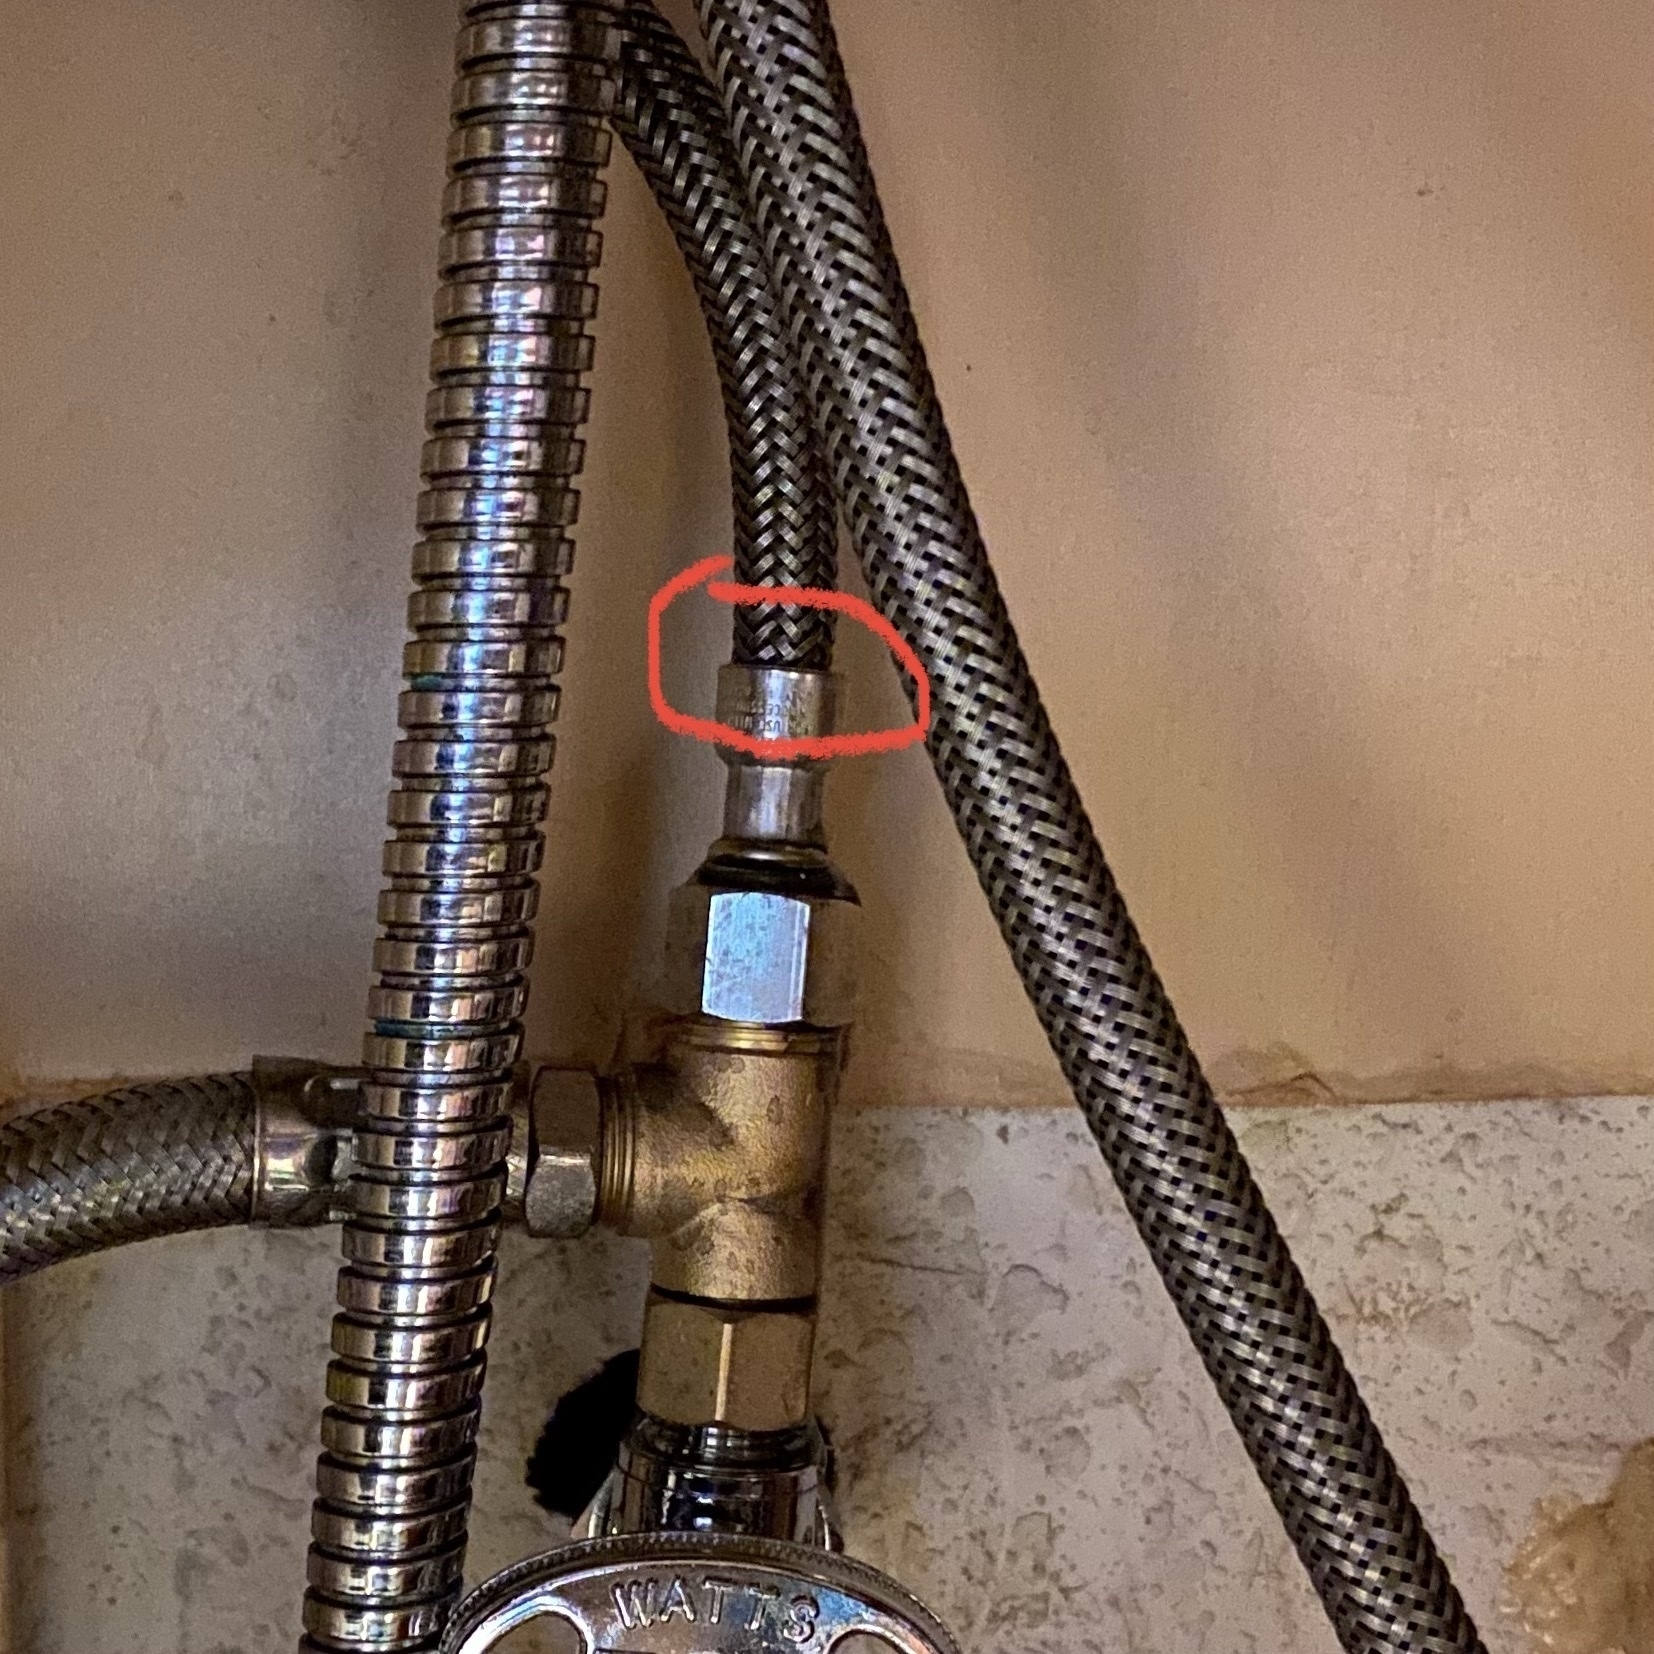 hot water supply line leaking below kitchen sink